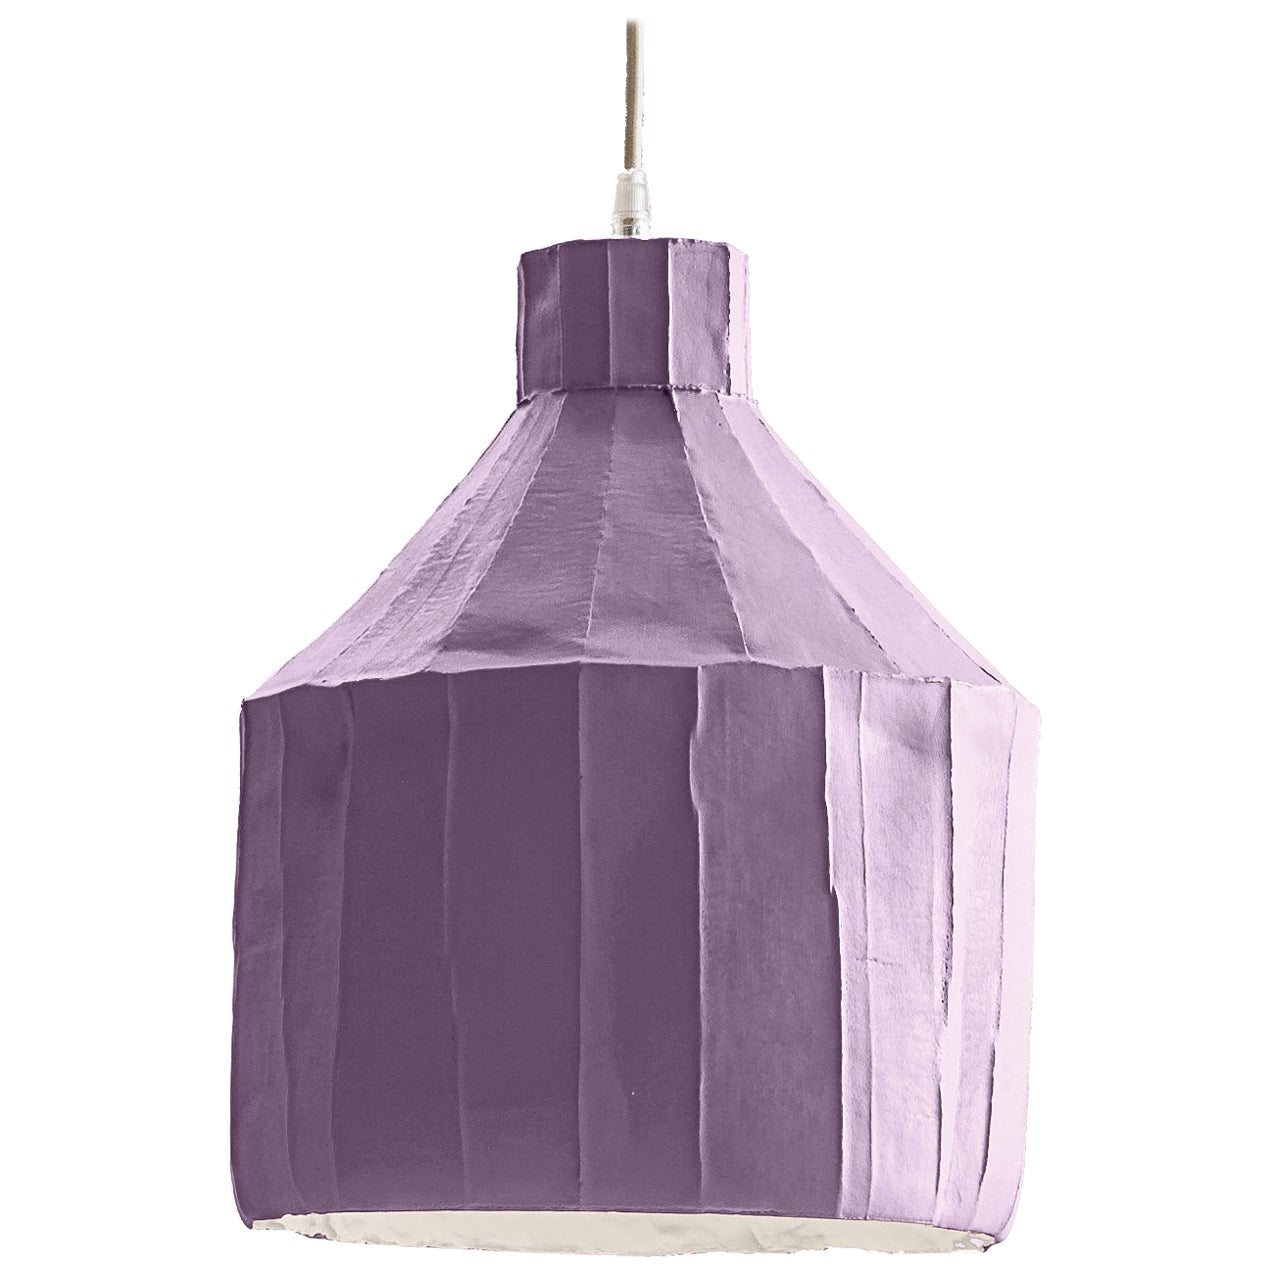 Zeitgenössische SUFI-Lampe aus Keramik mit lavendelfarbener Corteccia-Textur